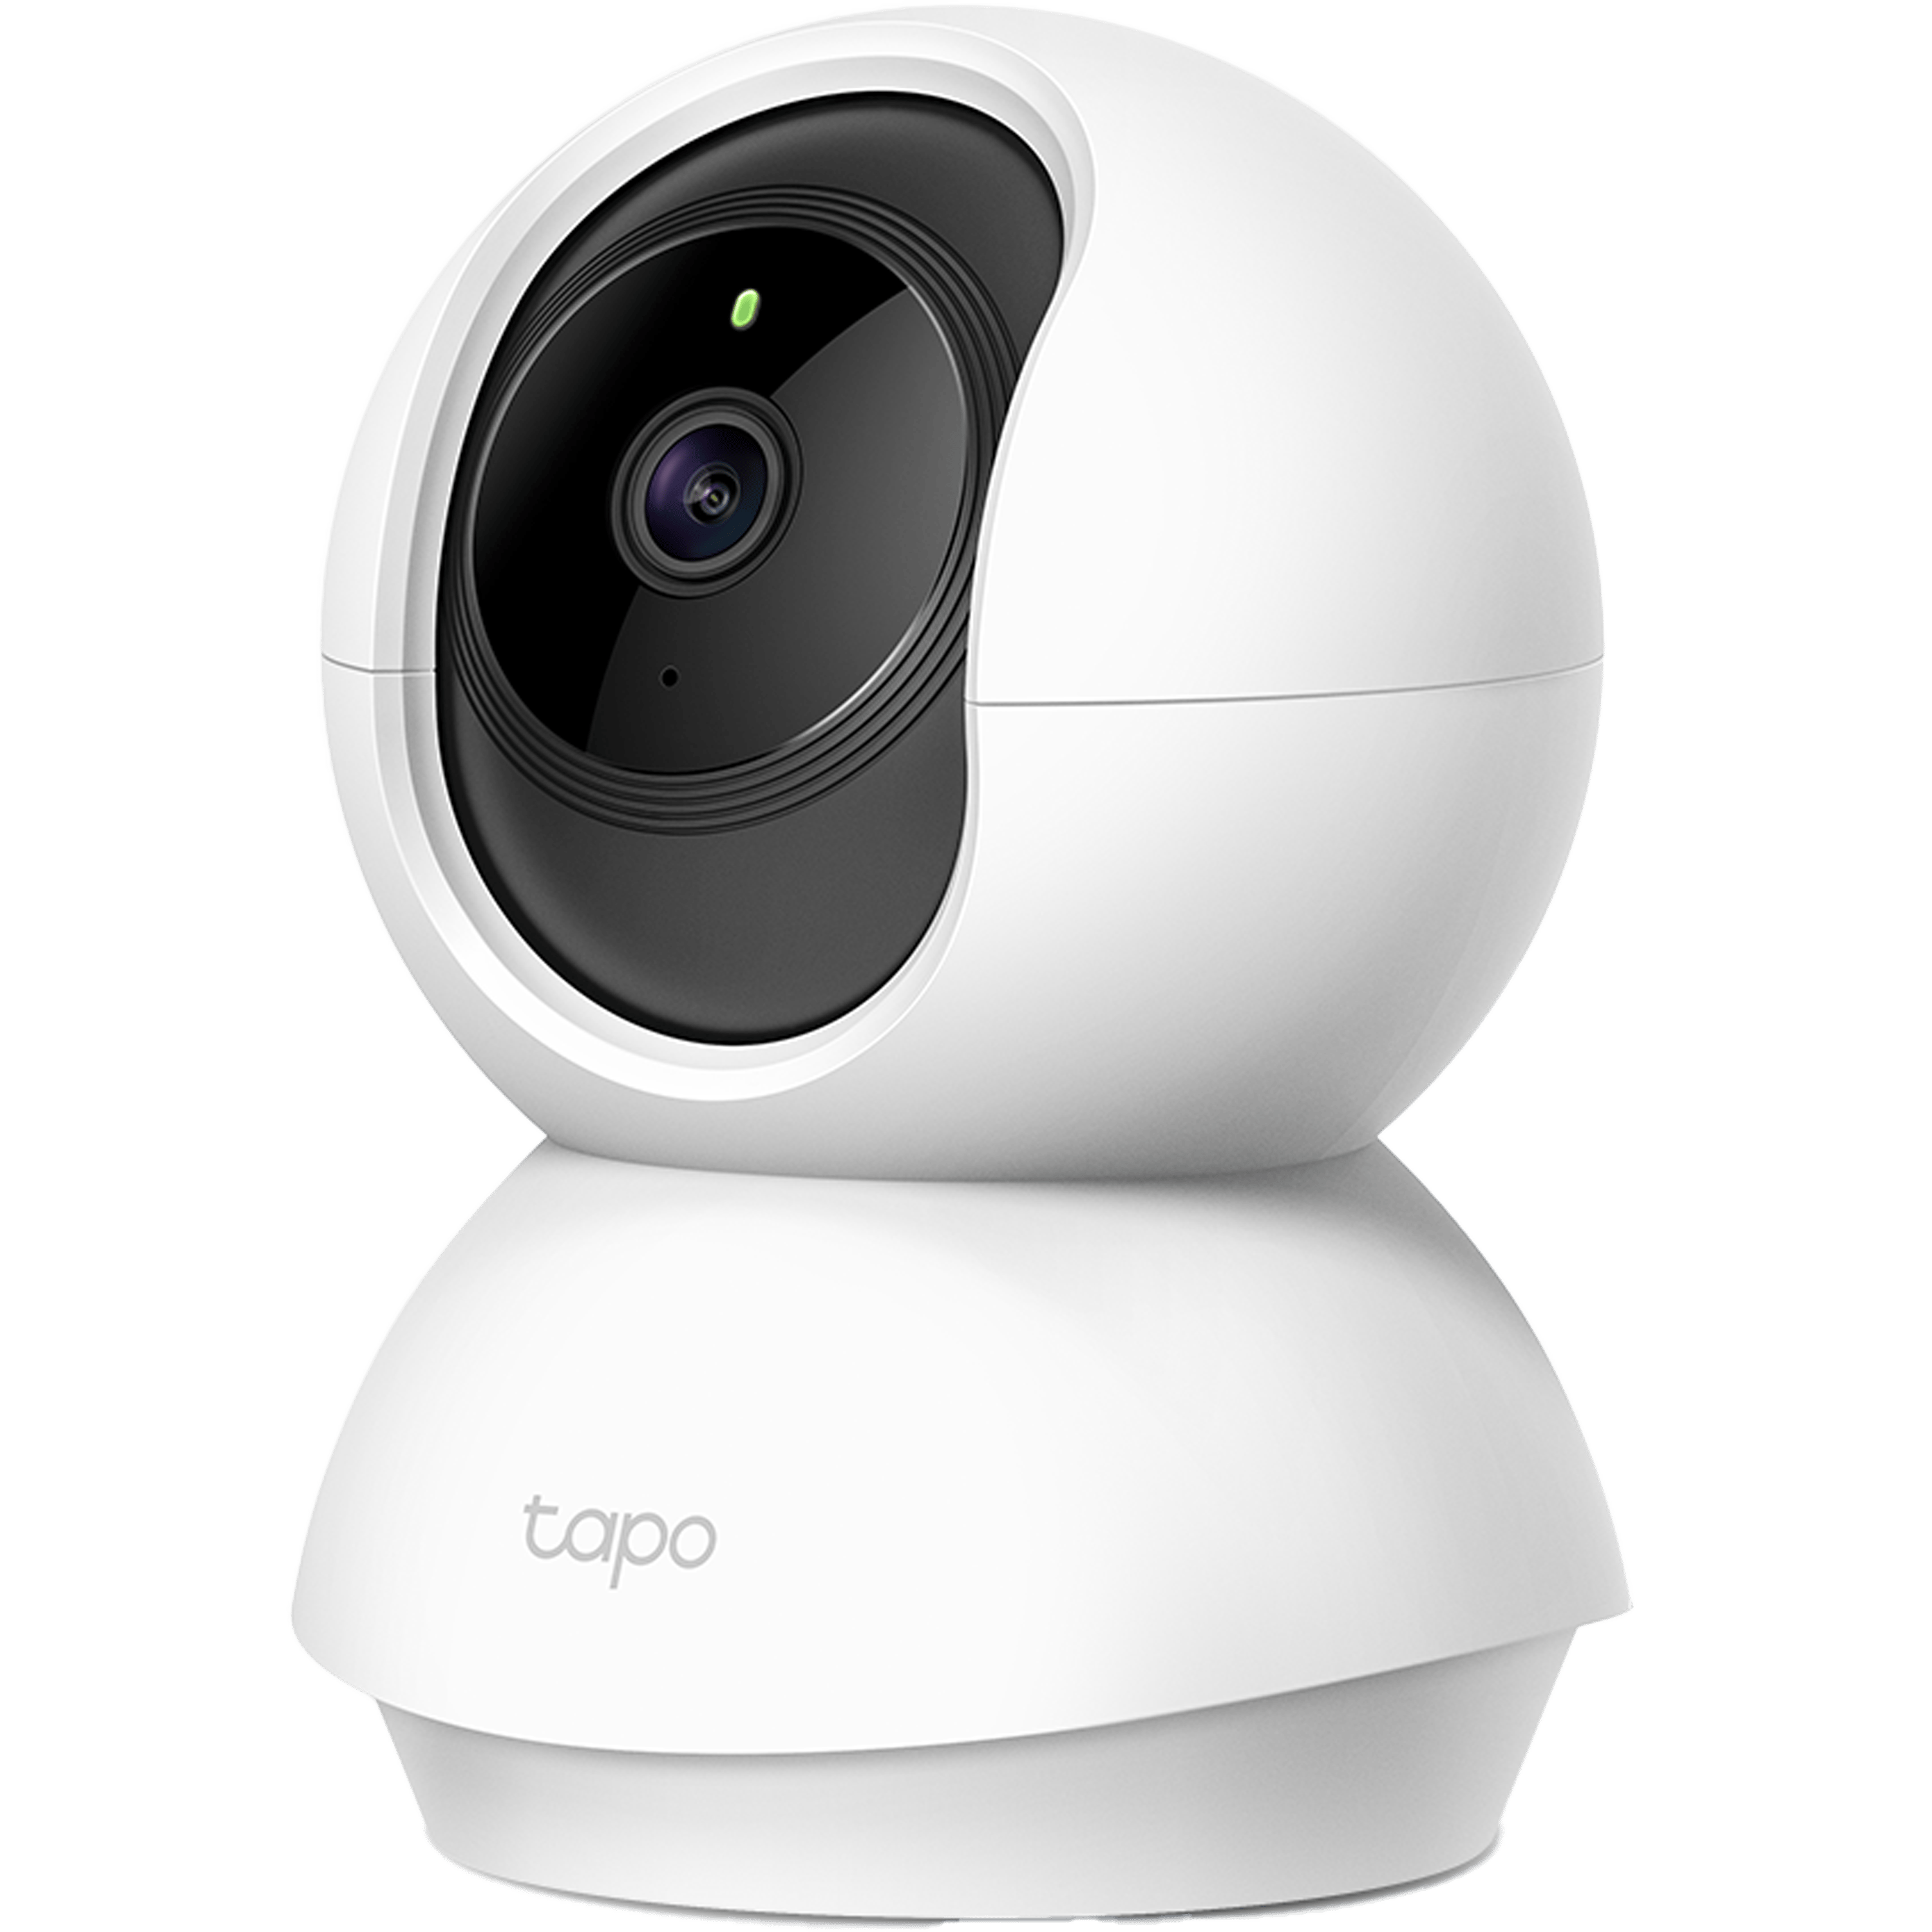 מצלמת אבטחה חכמה לבית TP-Link Tapo C200 WiFi 1080P - בצבע לבן שלוש שנות אחריות ע